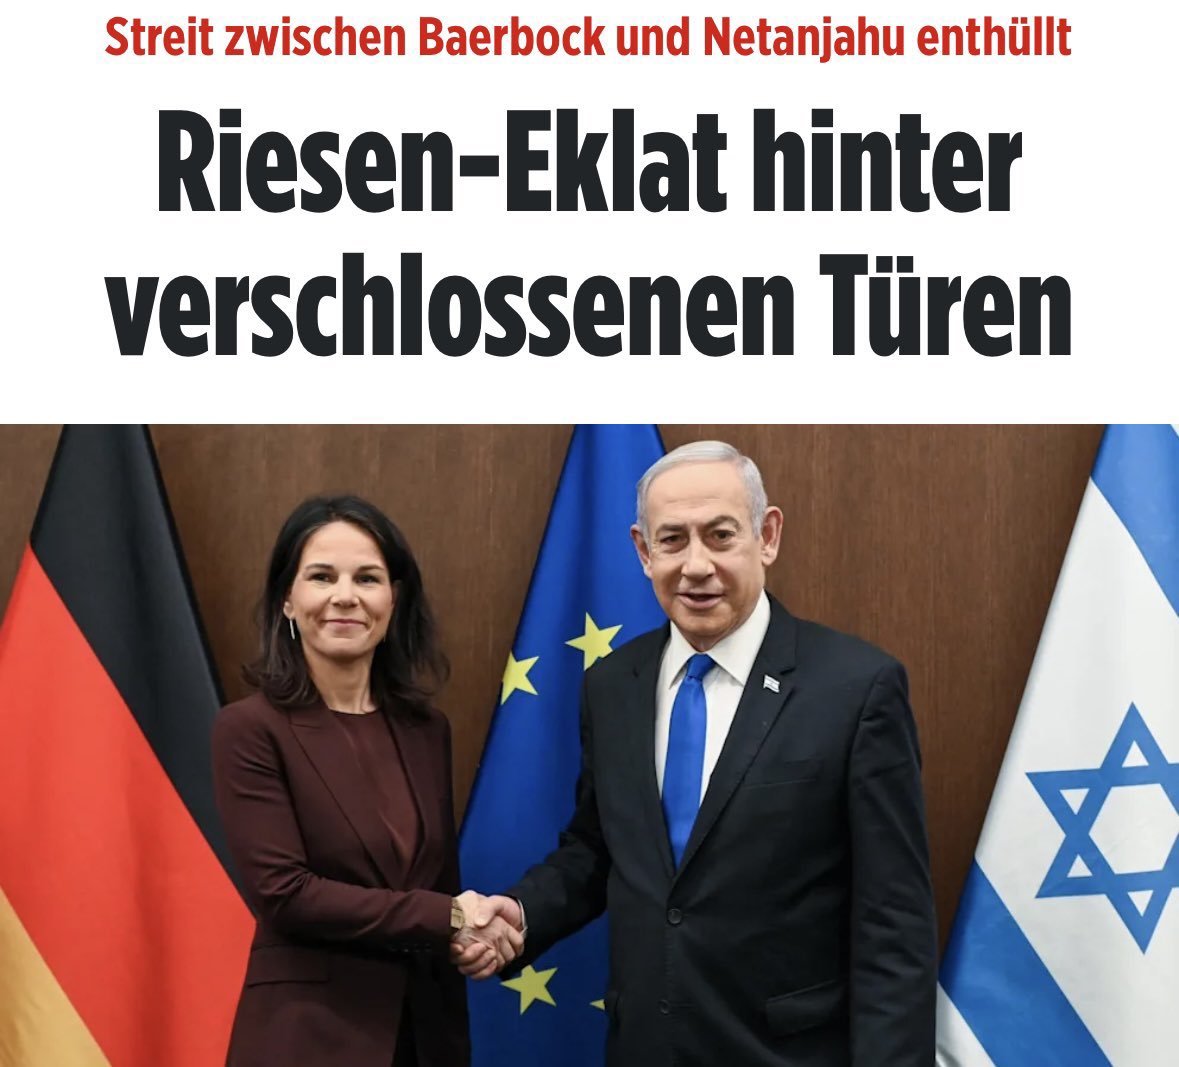 Der letzte grüne Außenminister war auch gegen den Irakkrieg und pflegte trotzdem einen professionell-diplomatischen Umgang mit den USA. Die Grünen von heute können nicht mal das! #Baerbock #Netanyahu #Israel